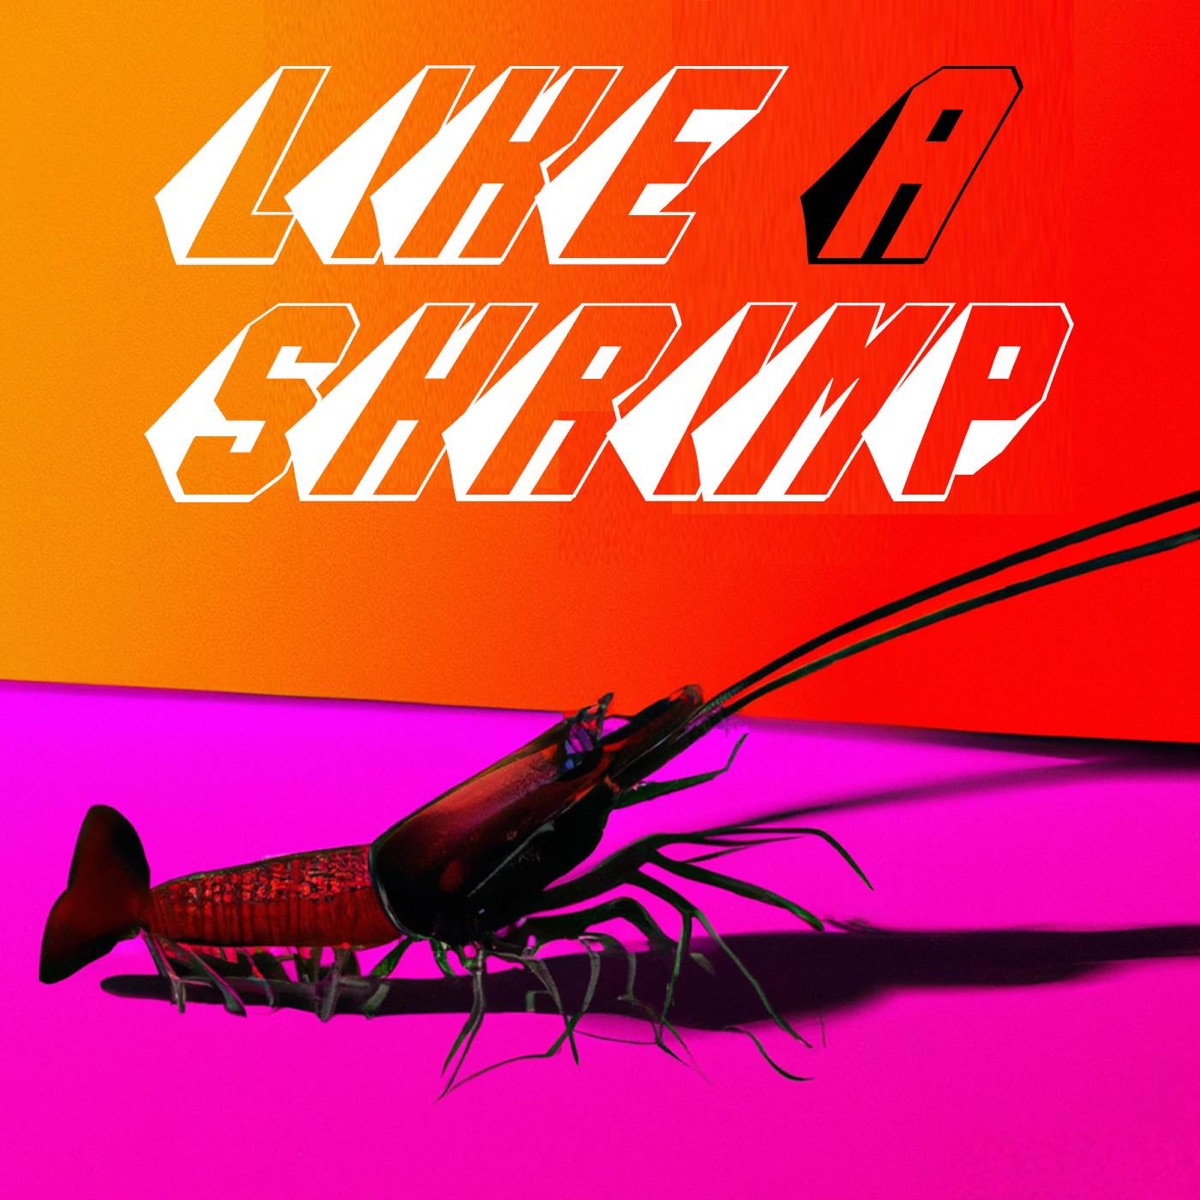 Shrimpdick